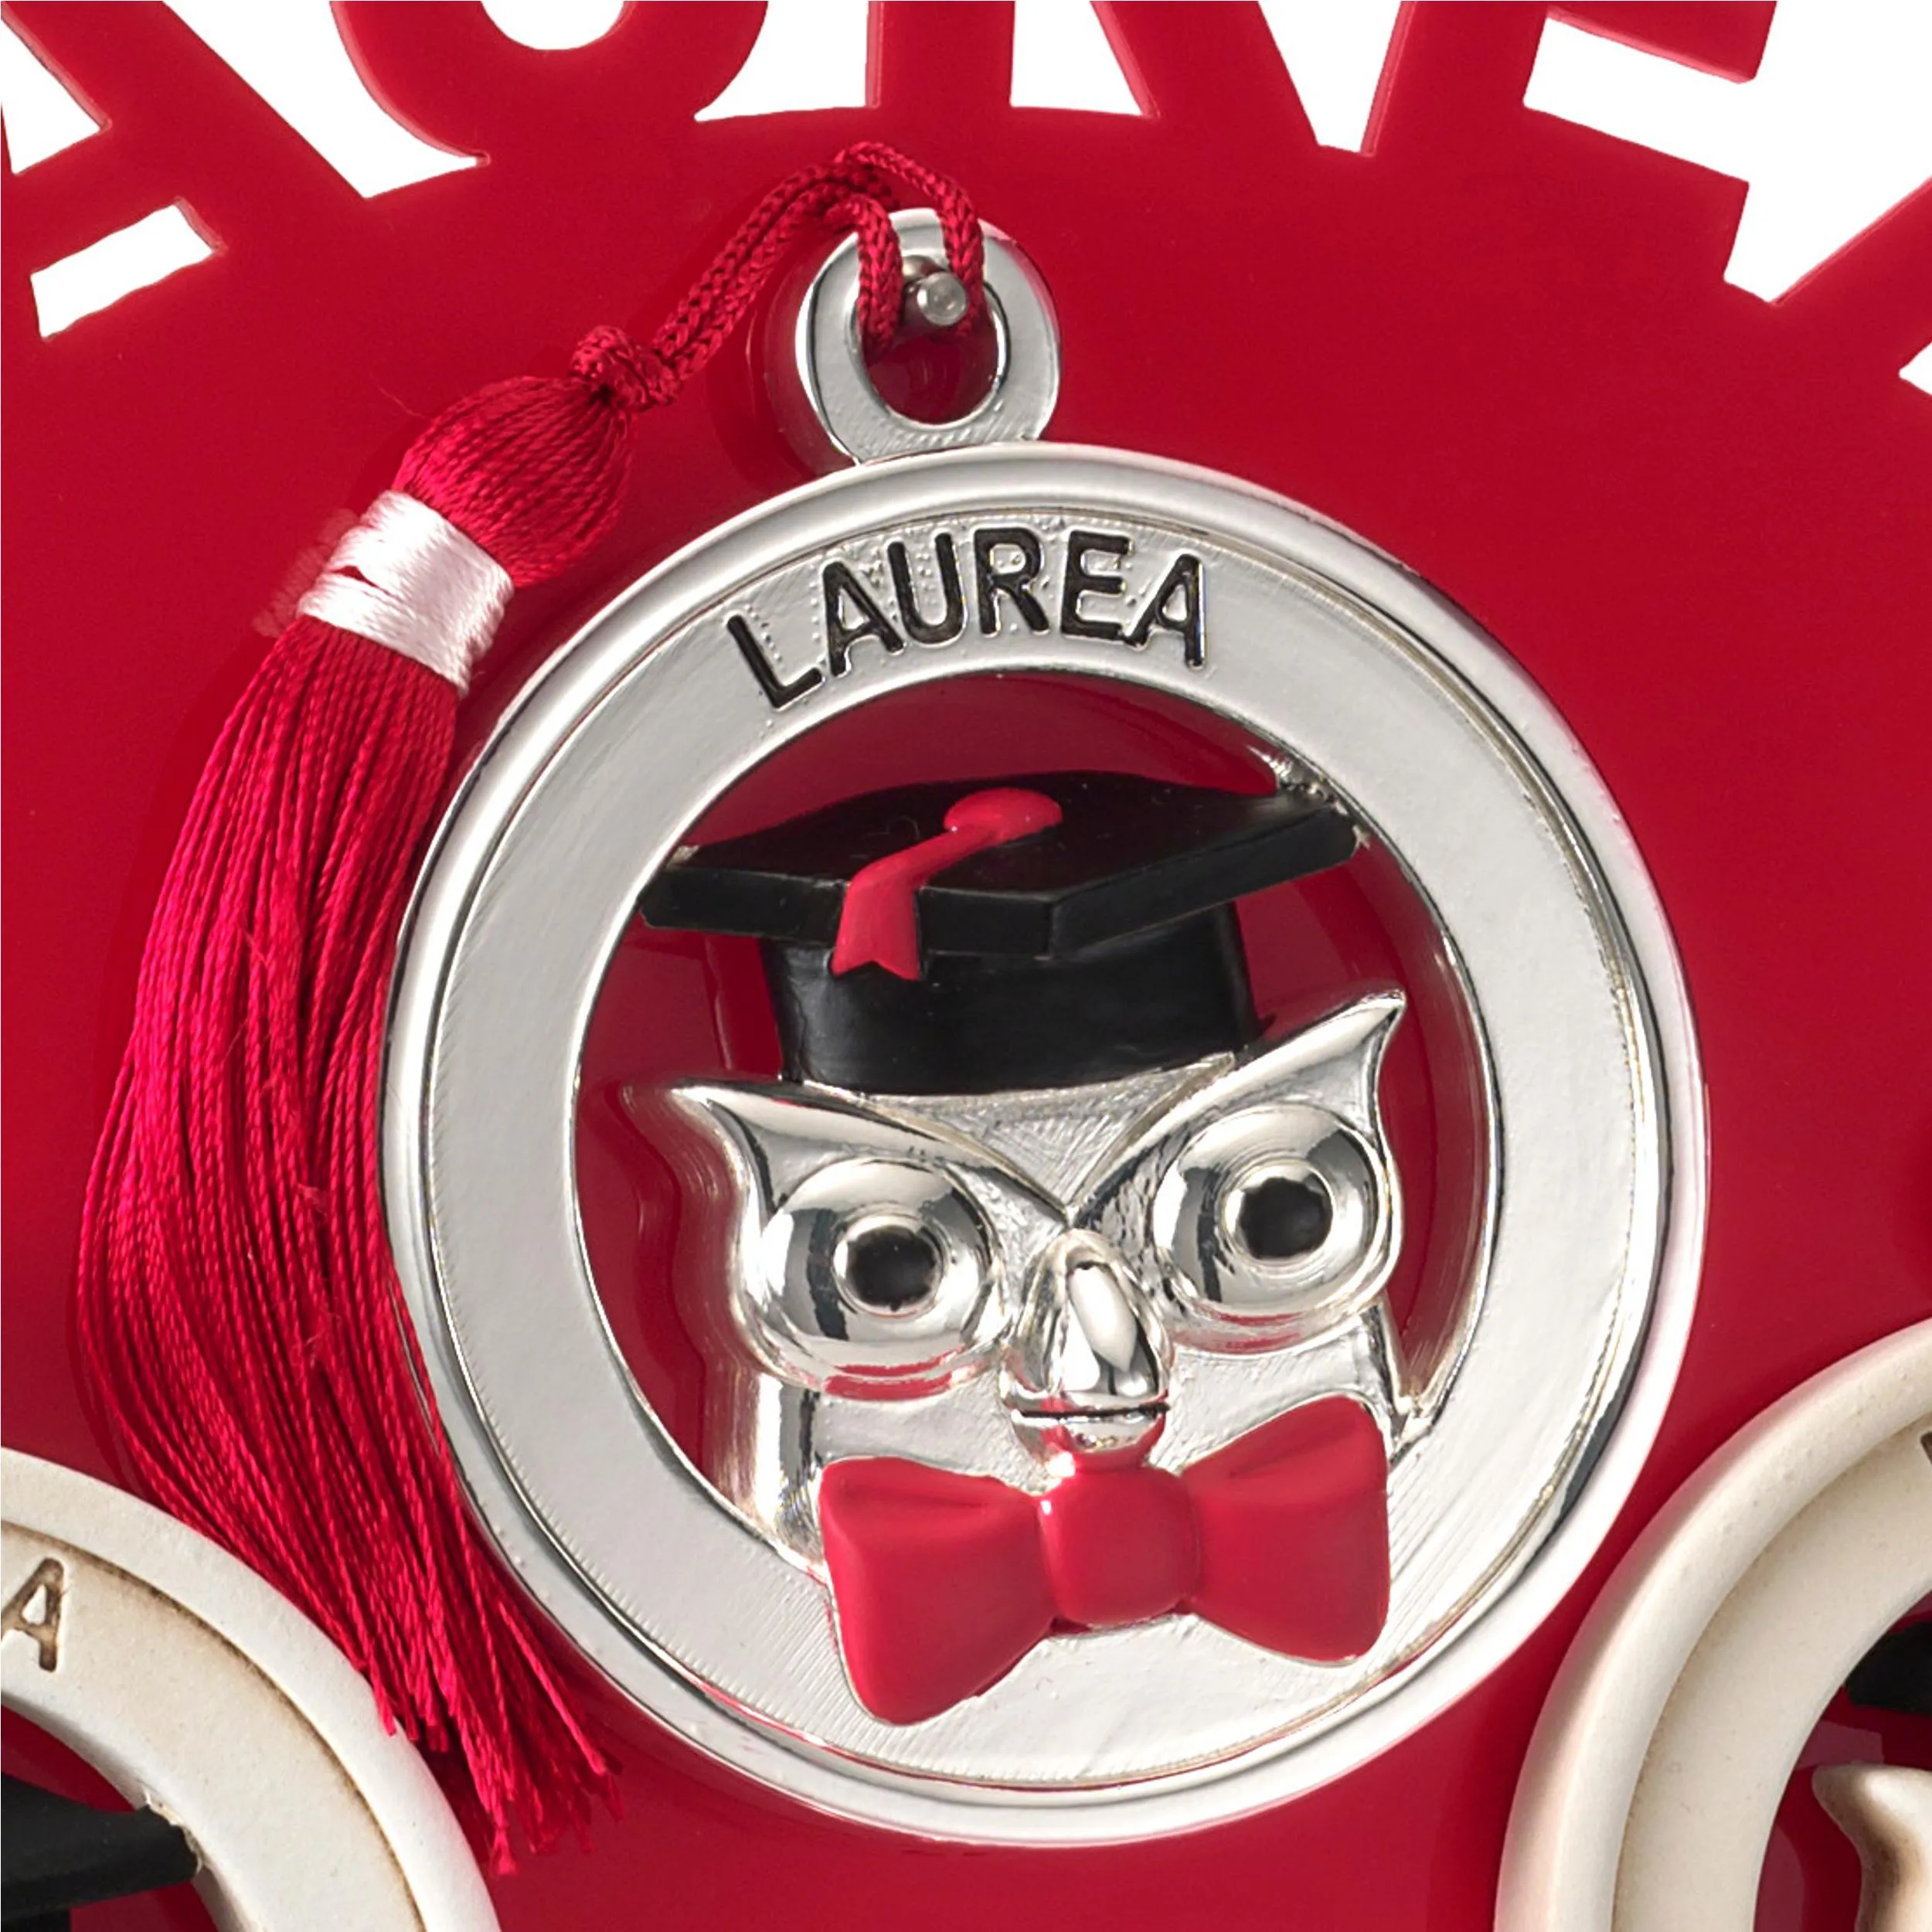 Medaglione Laurea gufo con Figura in resina Argentata particolari rossi Ø 8,5 cm in scatola regalo , bomboniera